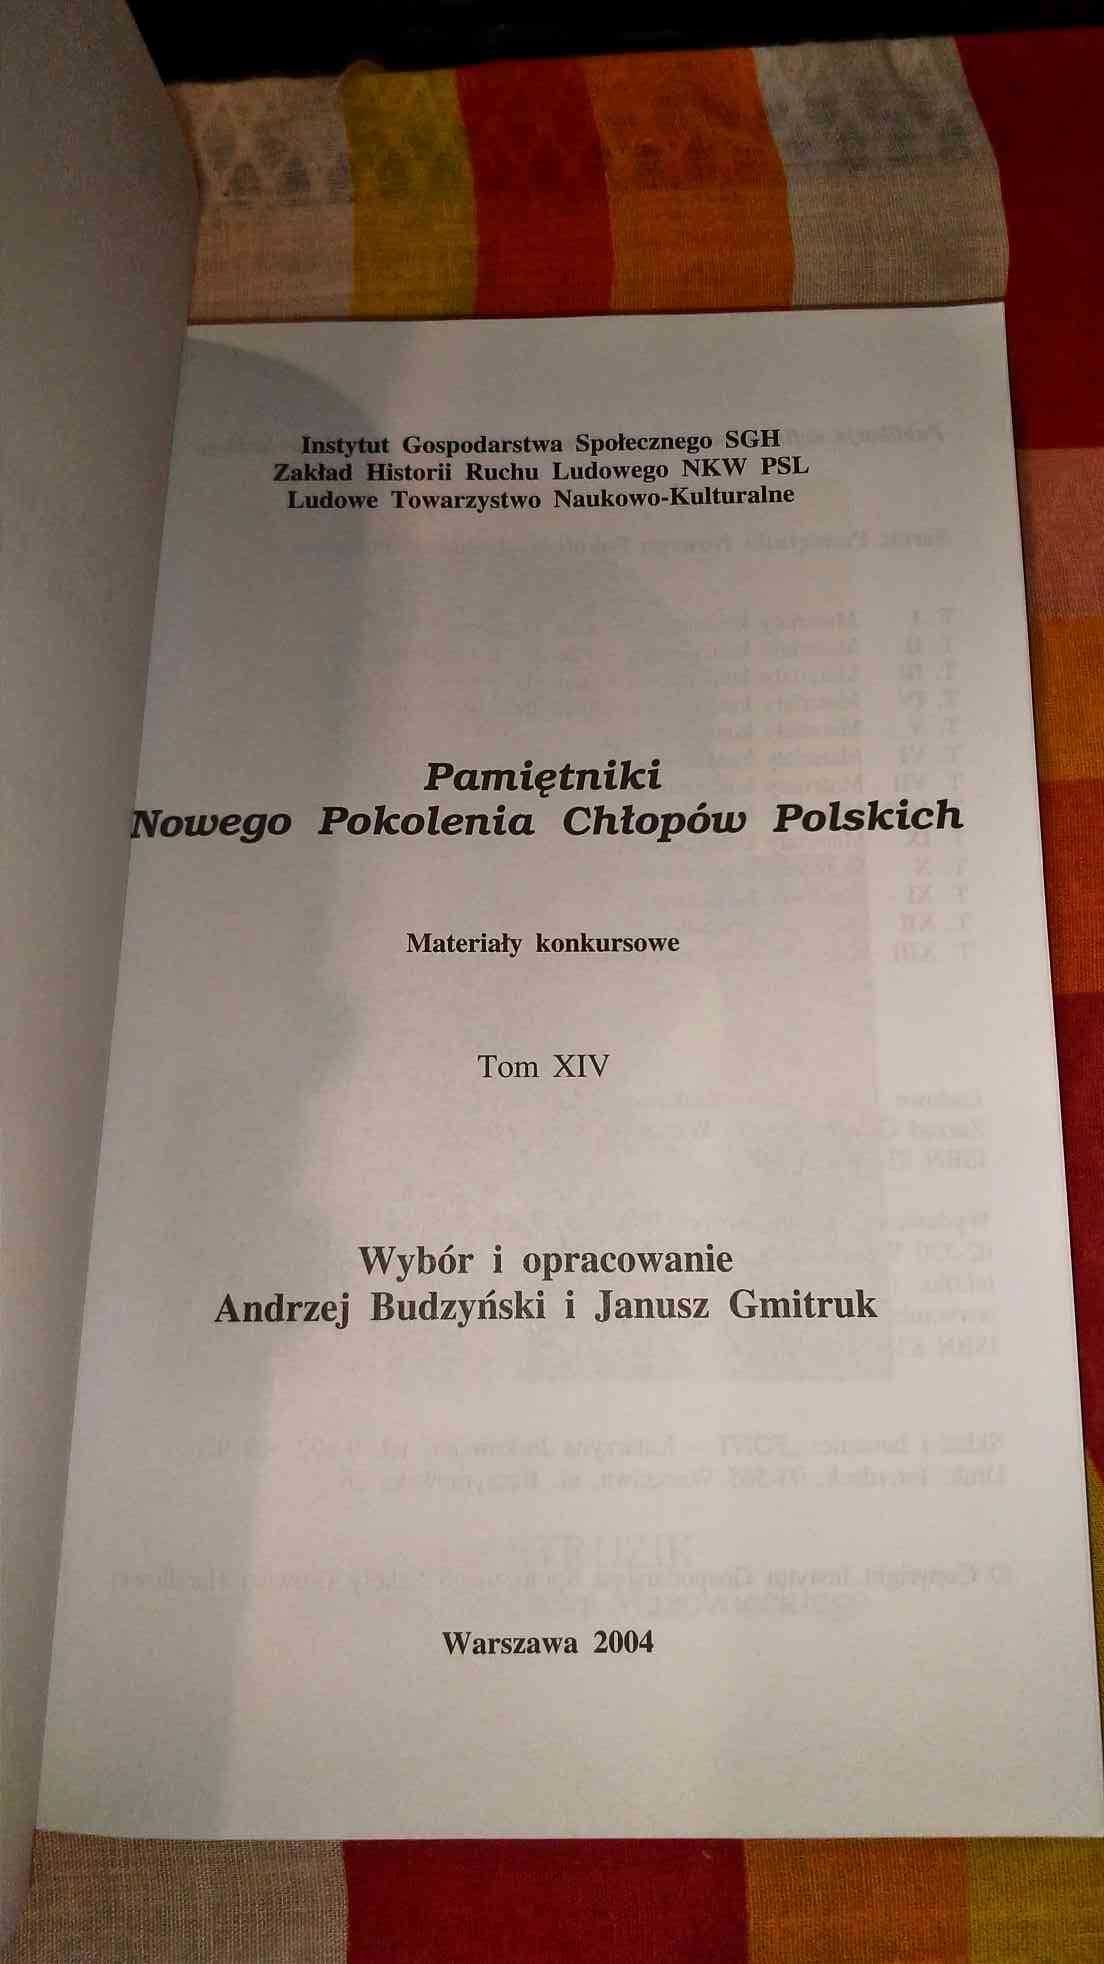 Pamiętniki Nowego Pokolenia Chłopów Polskich
TOM XIV